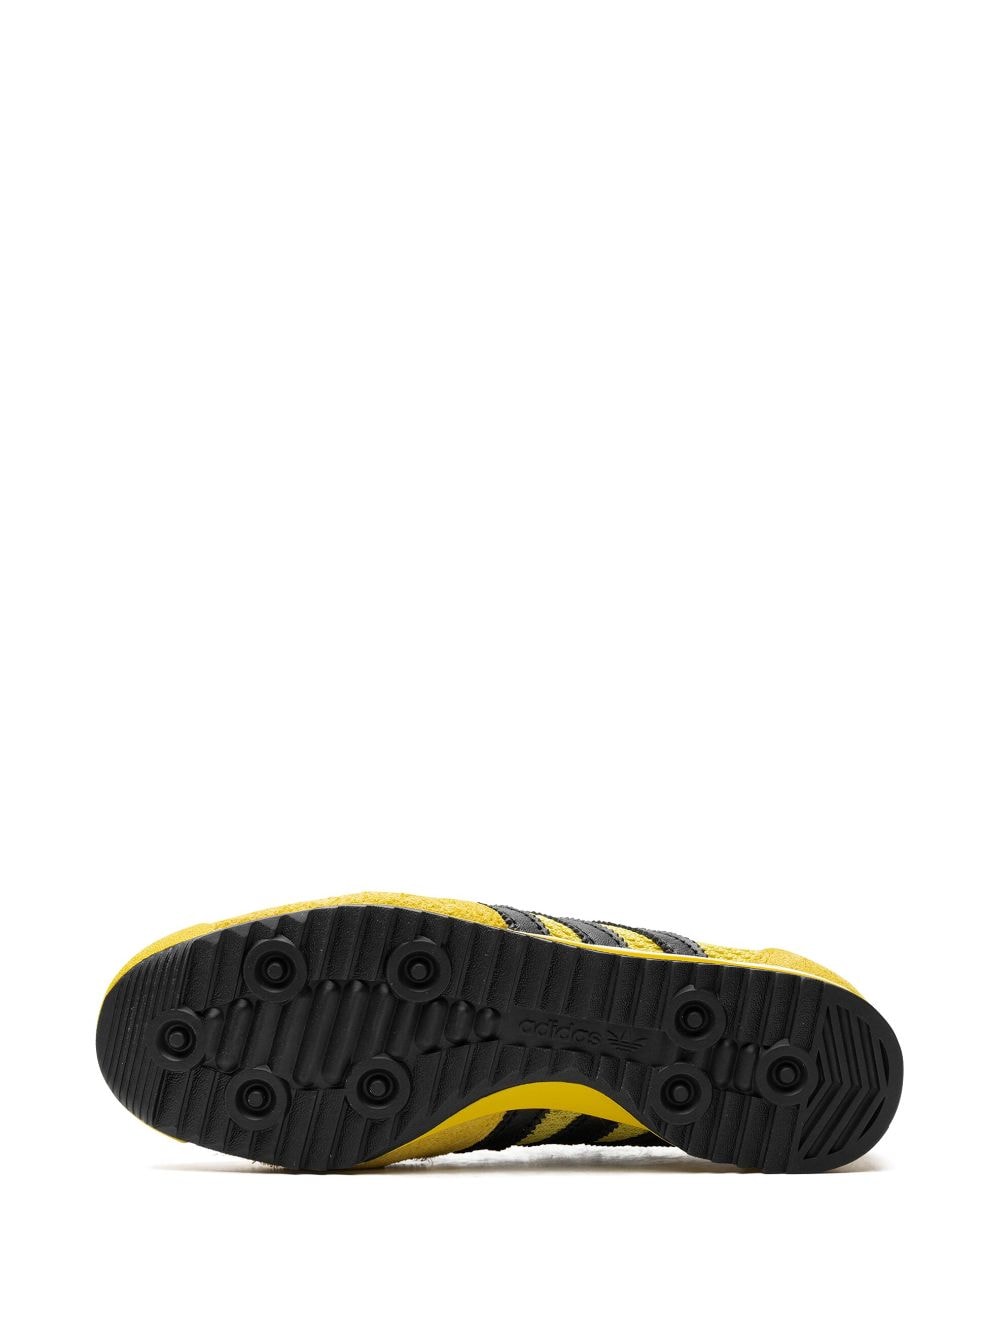 Samba Yellow/black sneakers